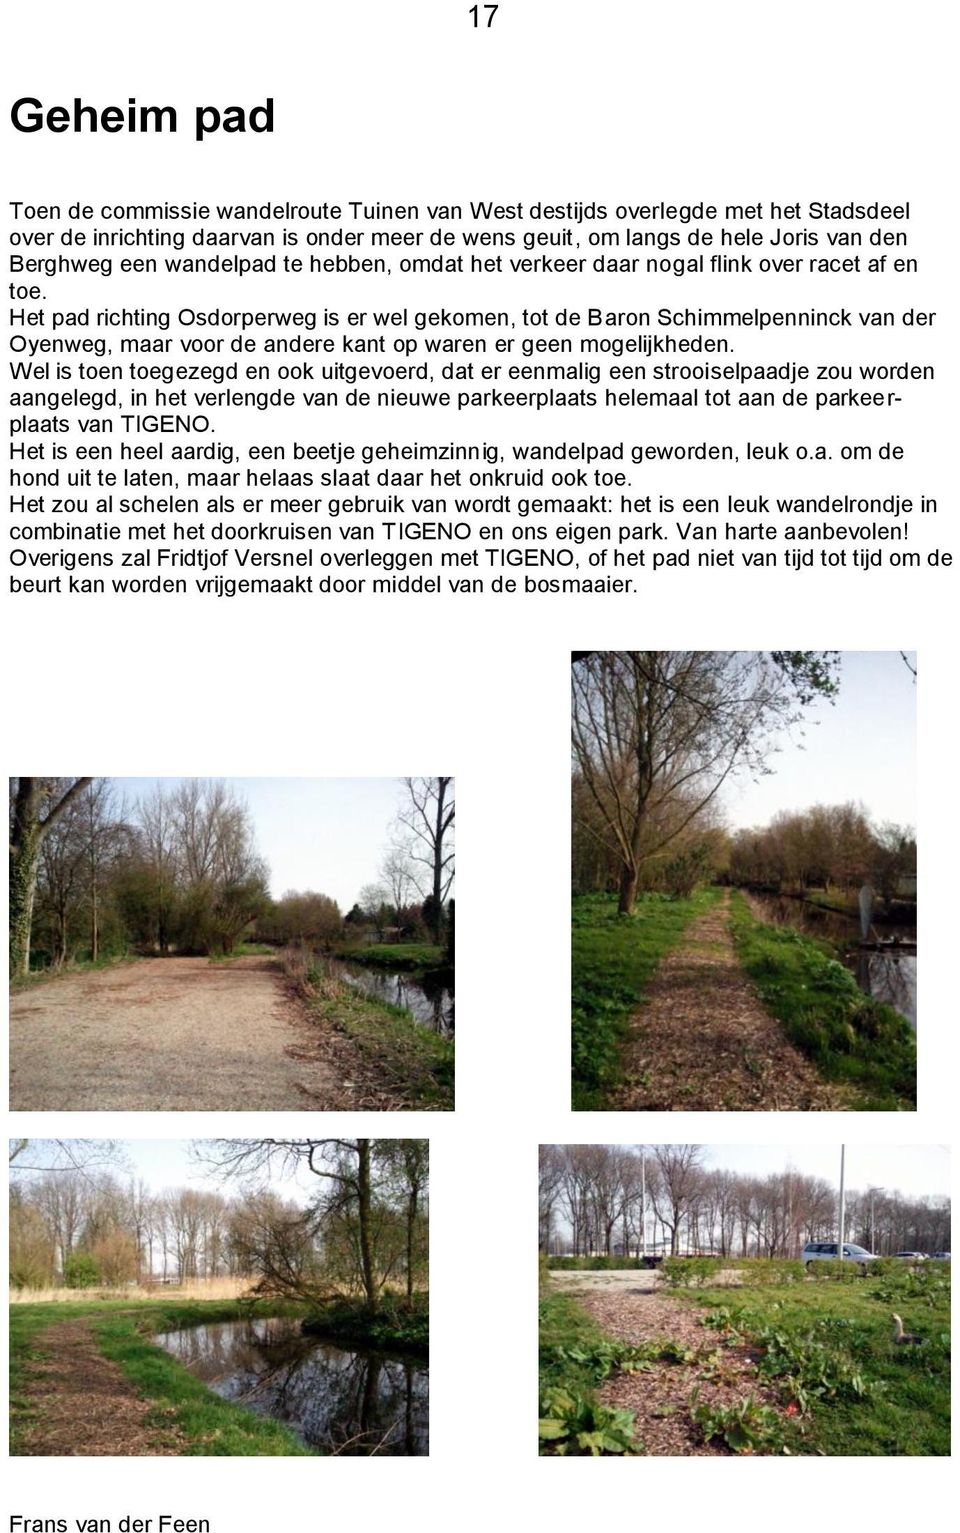 Het pad richting Osdorperweg is er wel gekomen, tot de Baron Schimmelpenninck van der Oyenweg, maar voor de andere kant op waren er geen mogelijkheden.